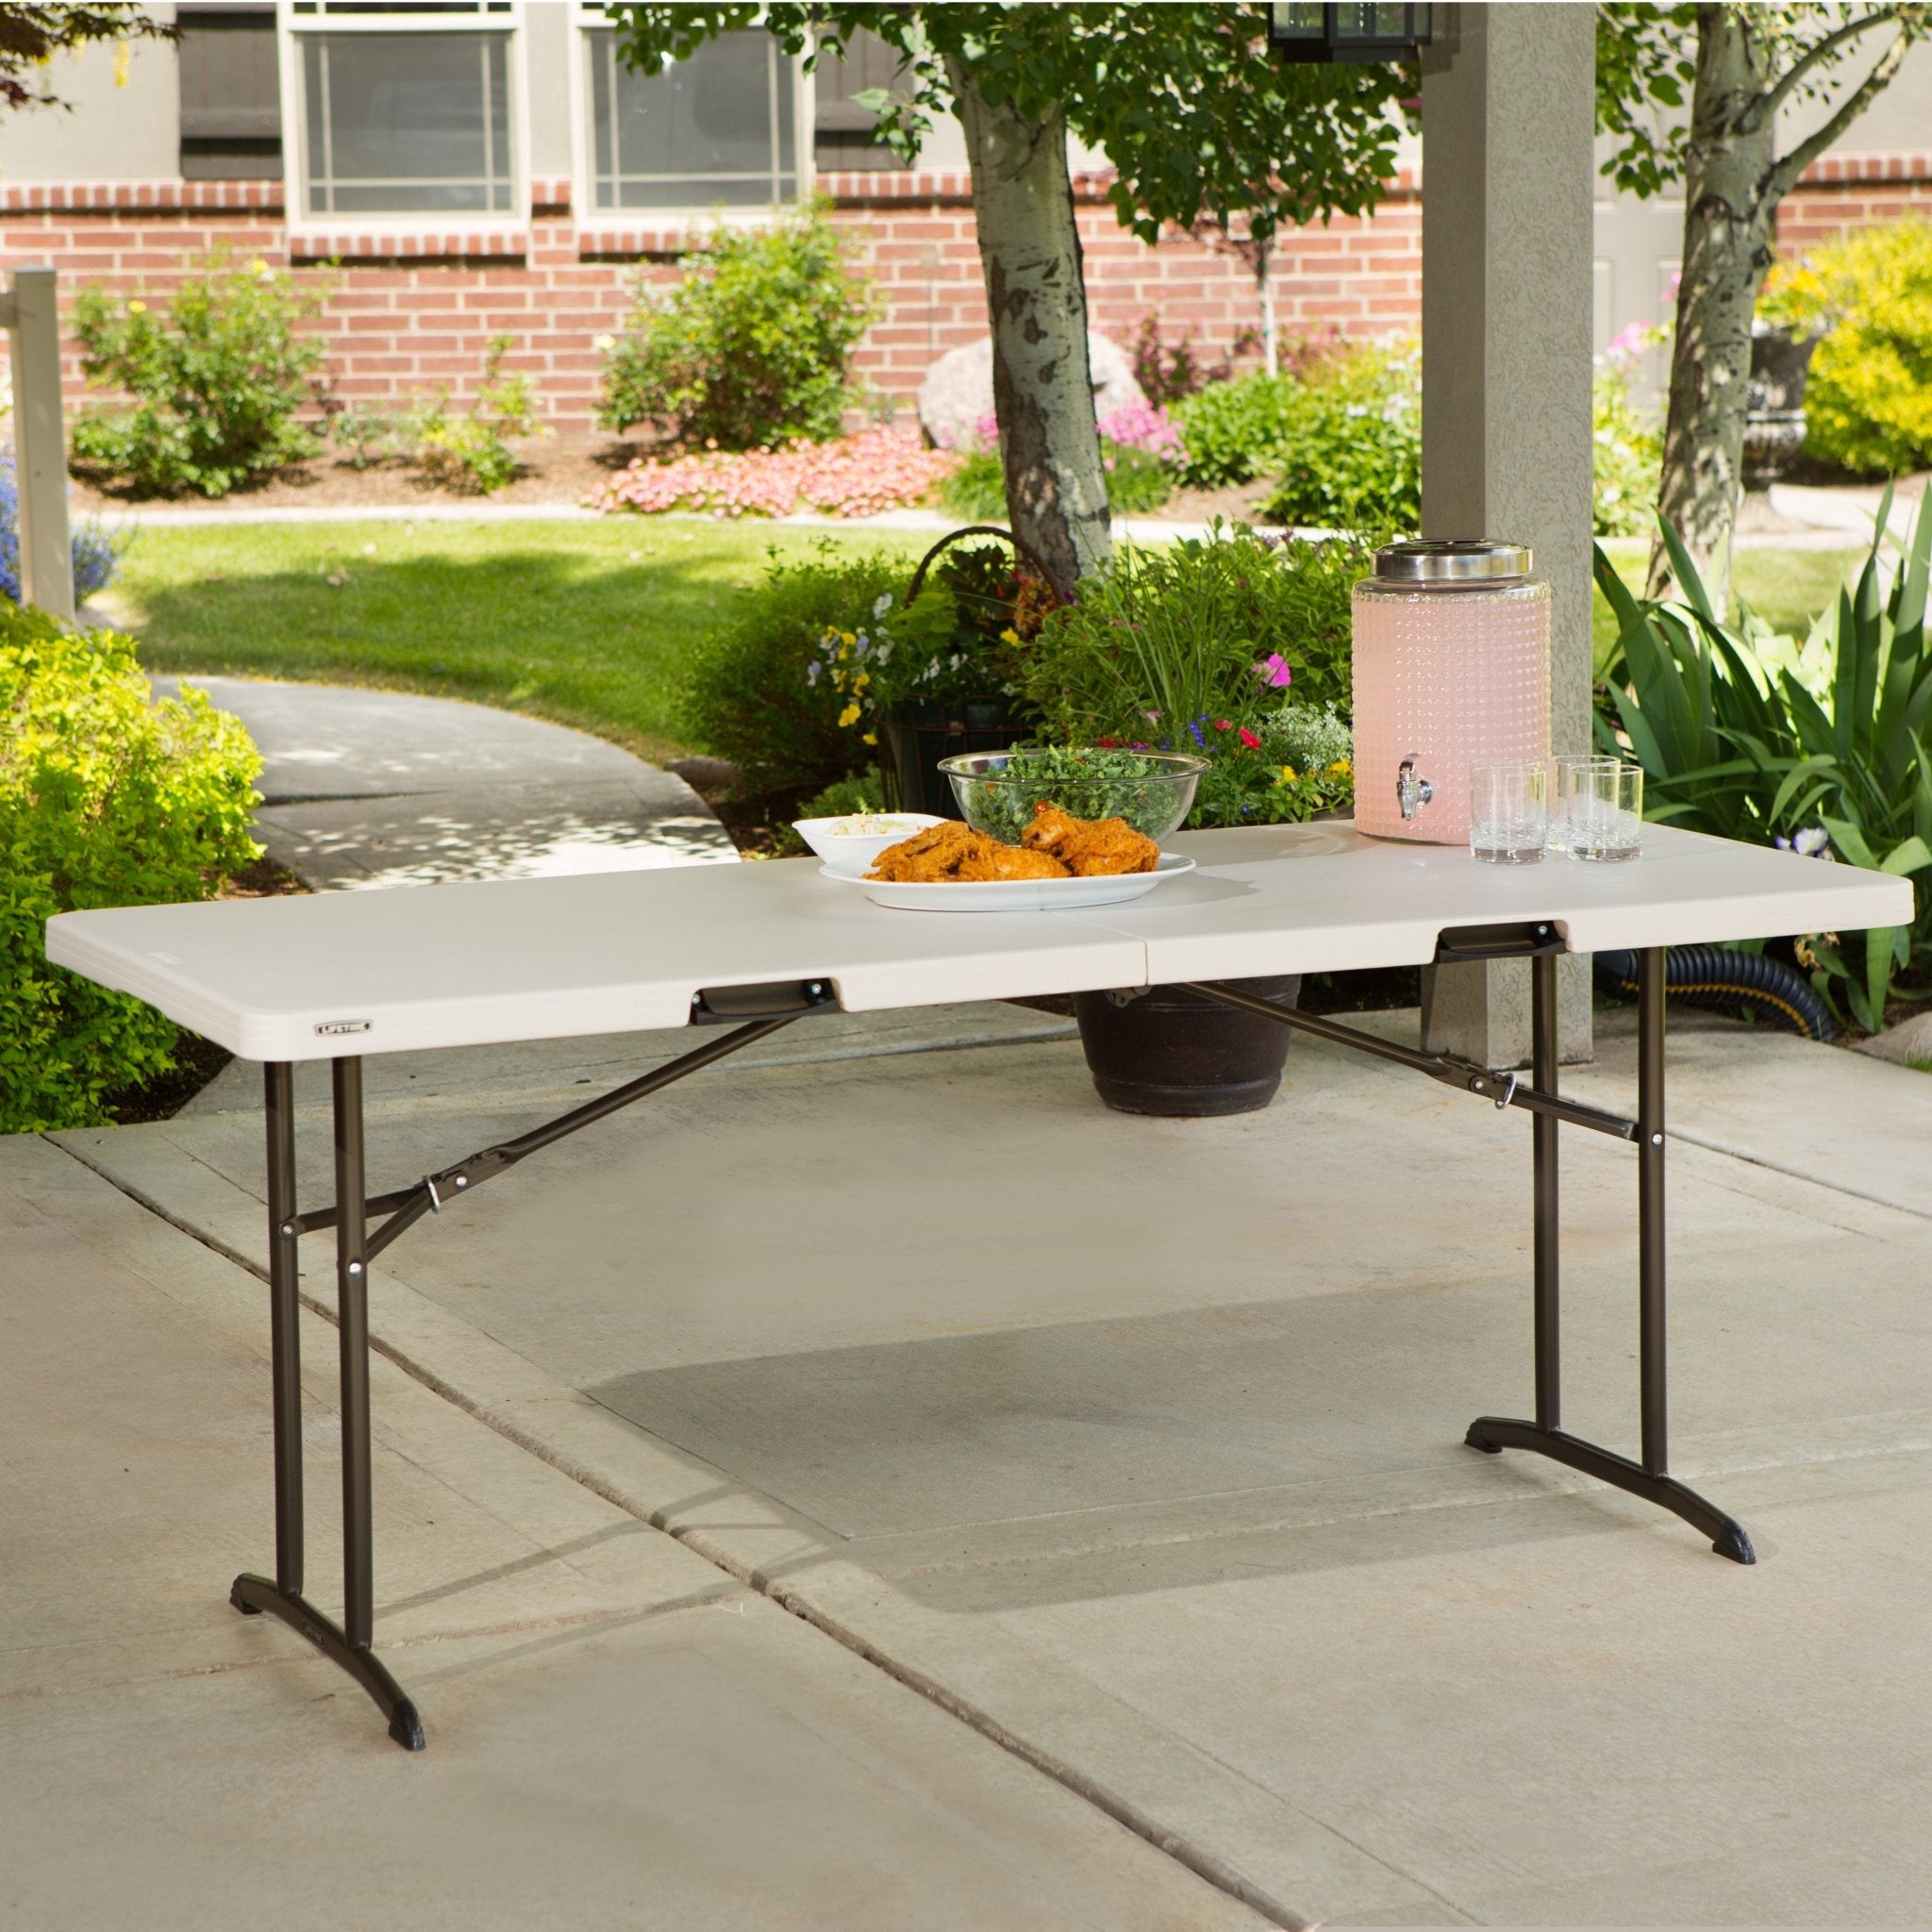 Elegir la mejor mesa plegable para exterior